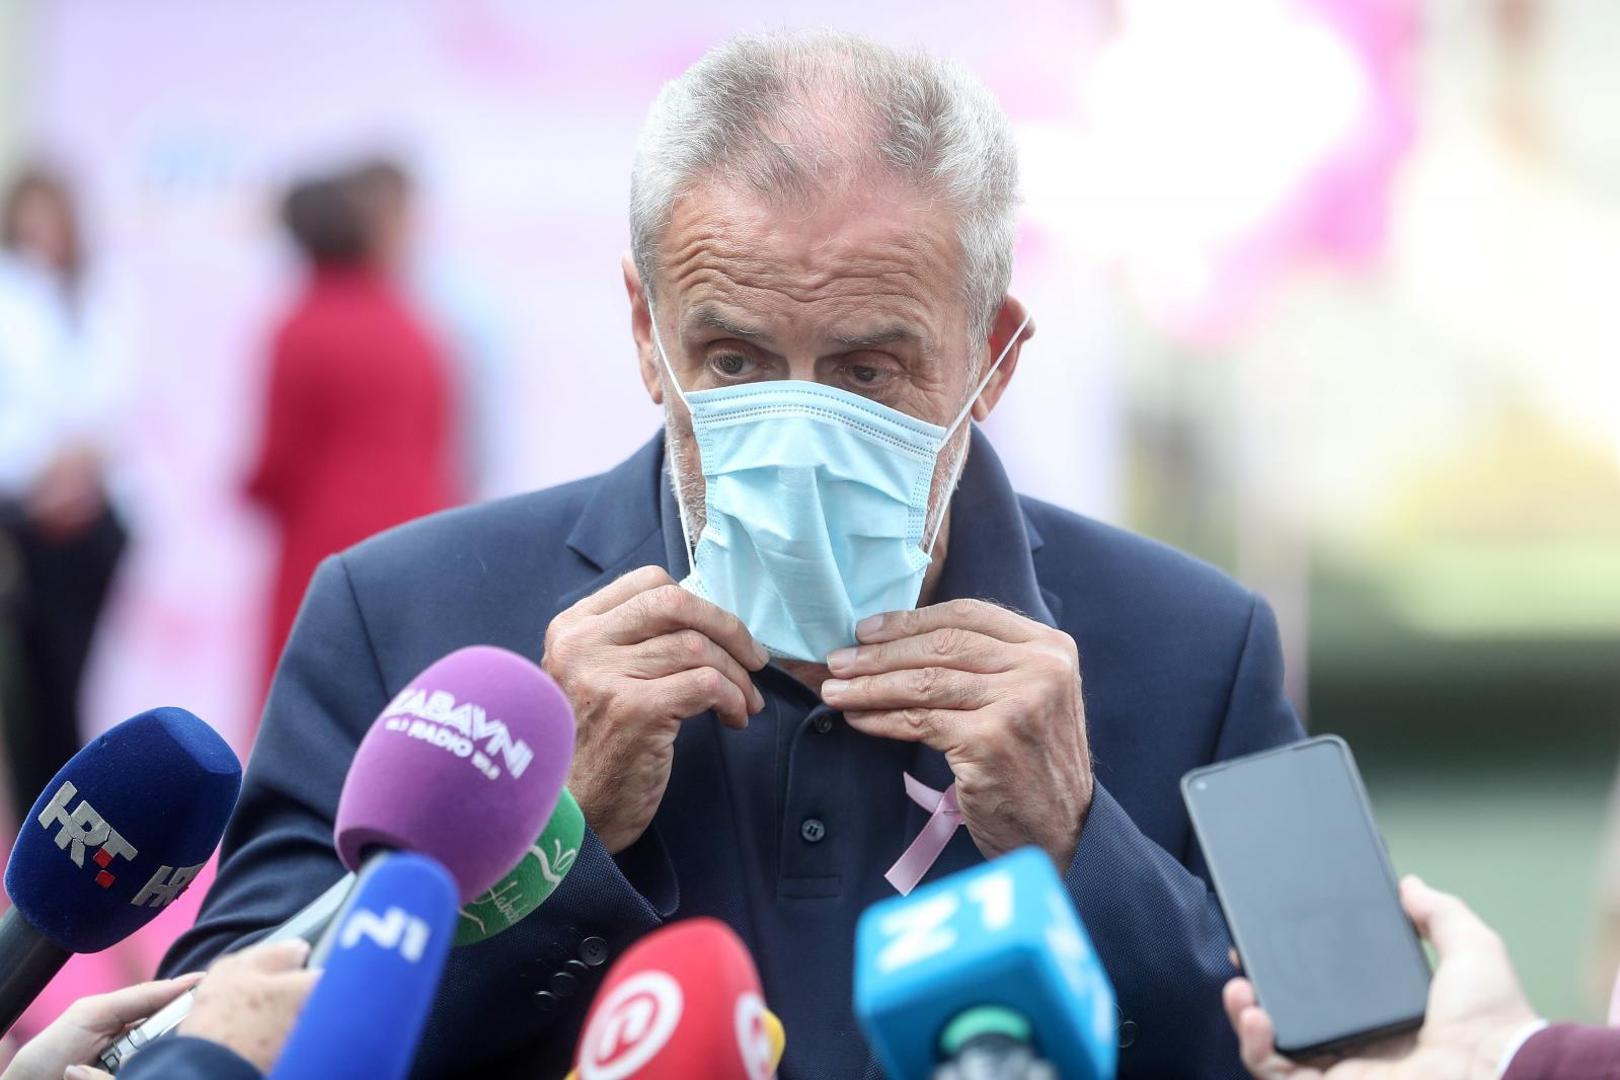 Gradonačelnik Milan Bandić dao je izjavu za medije povodom povećanog broja zaraženih koronavirusom u Gradu Zagrebu.